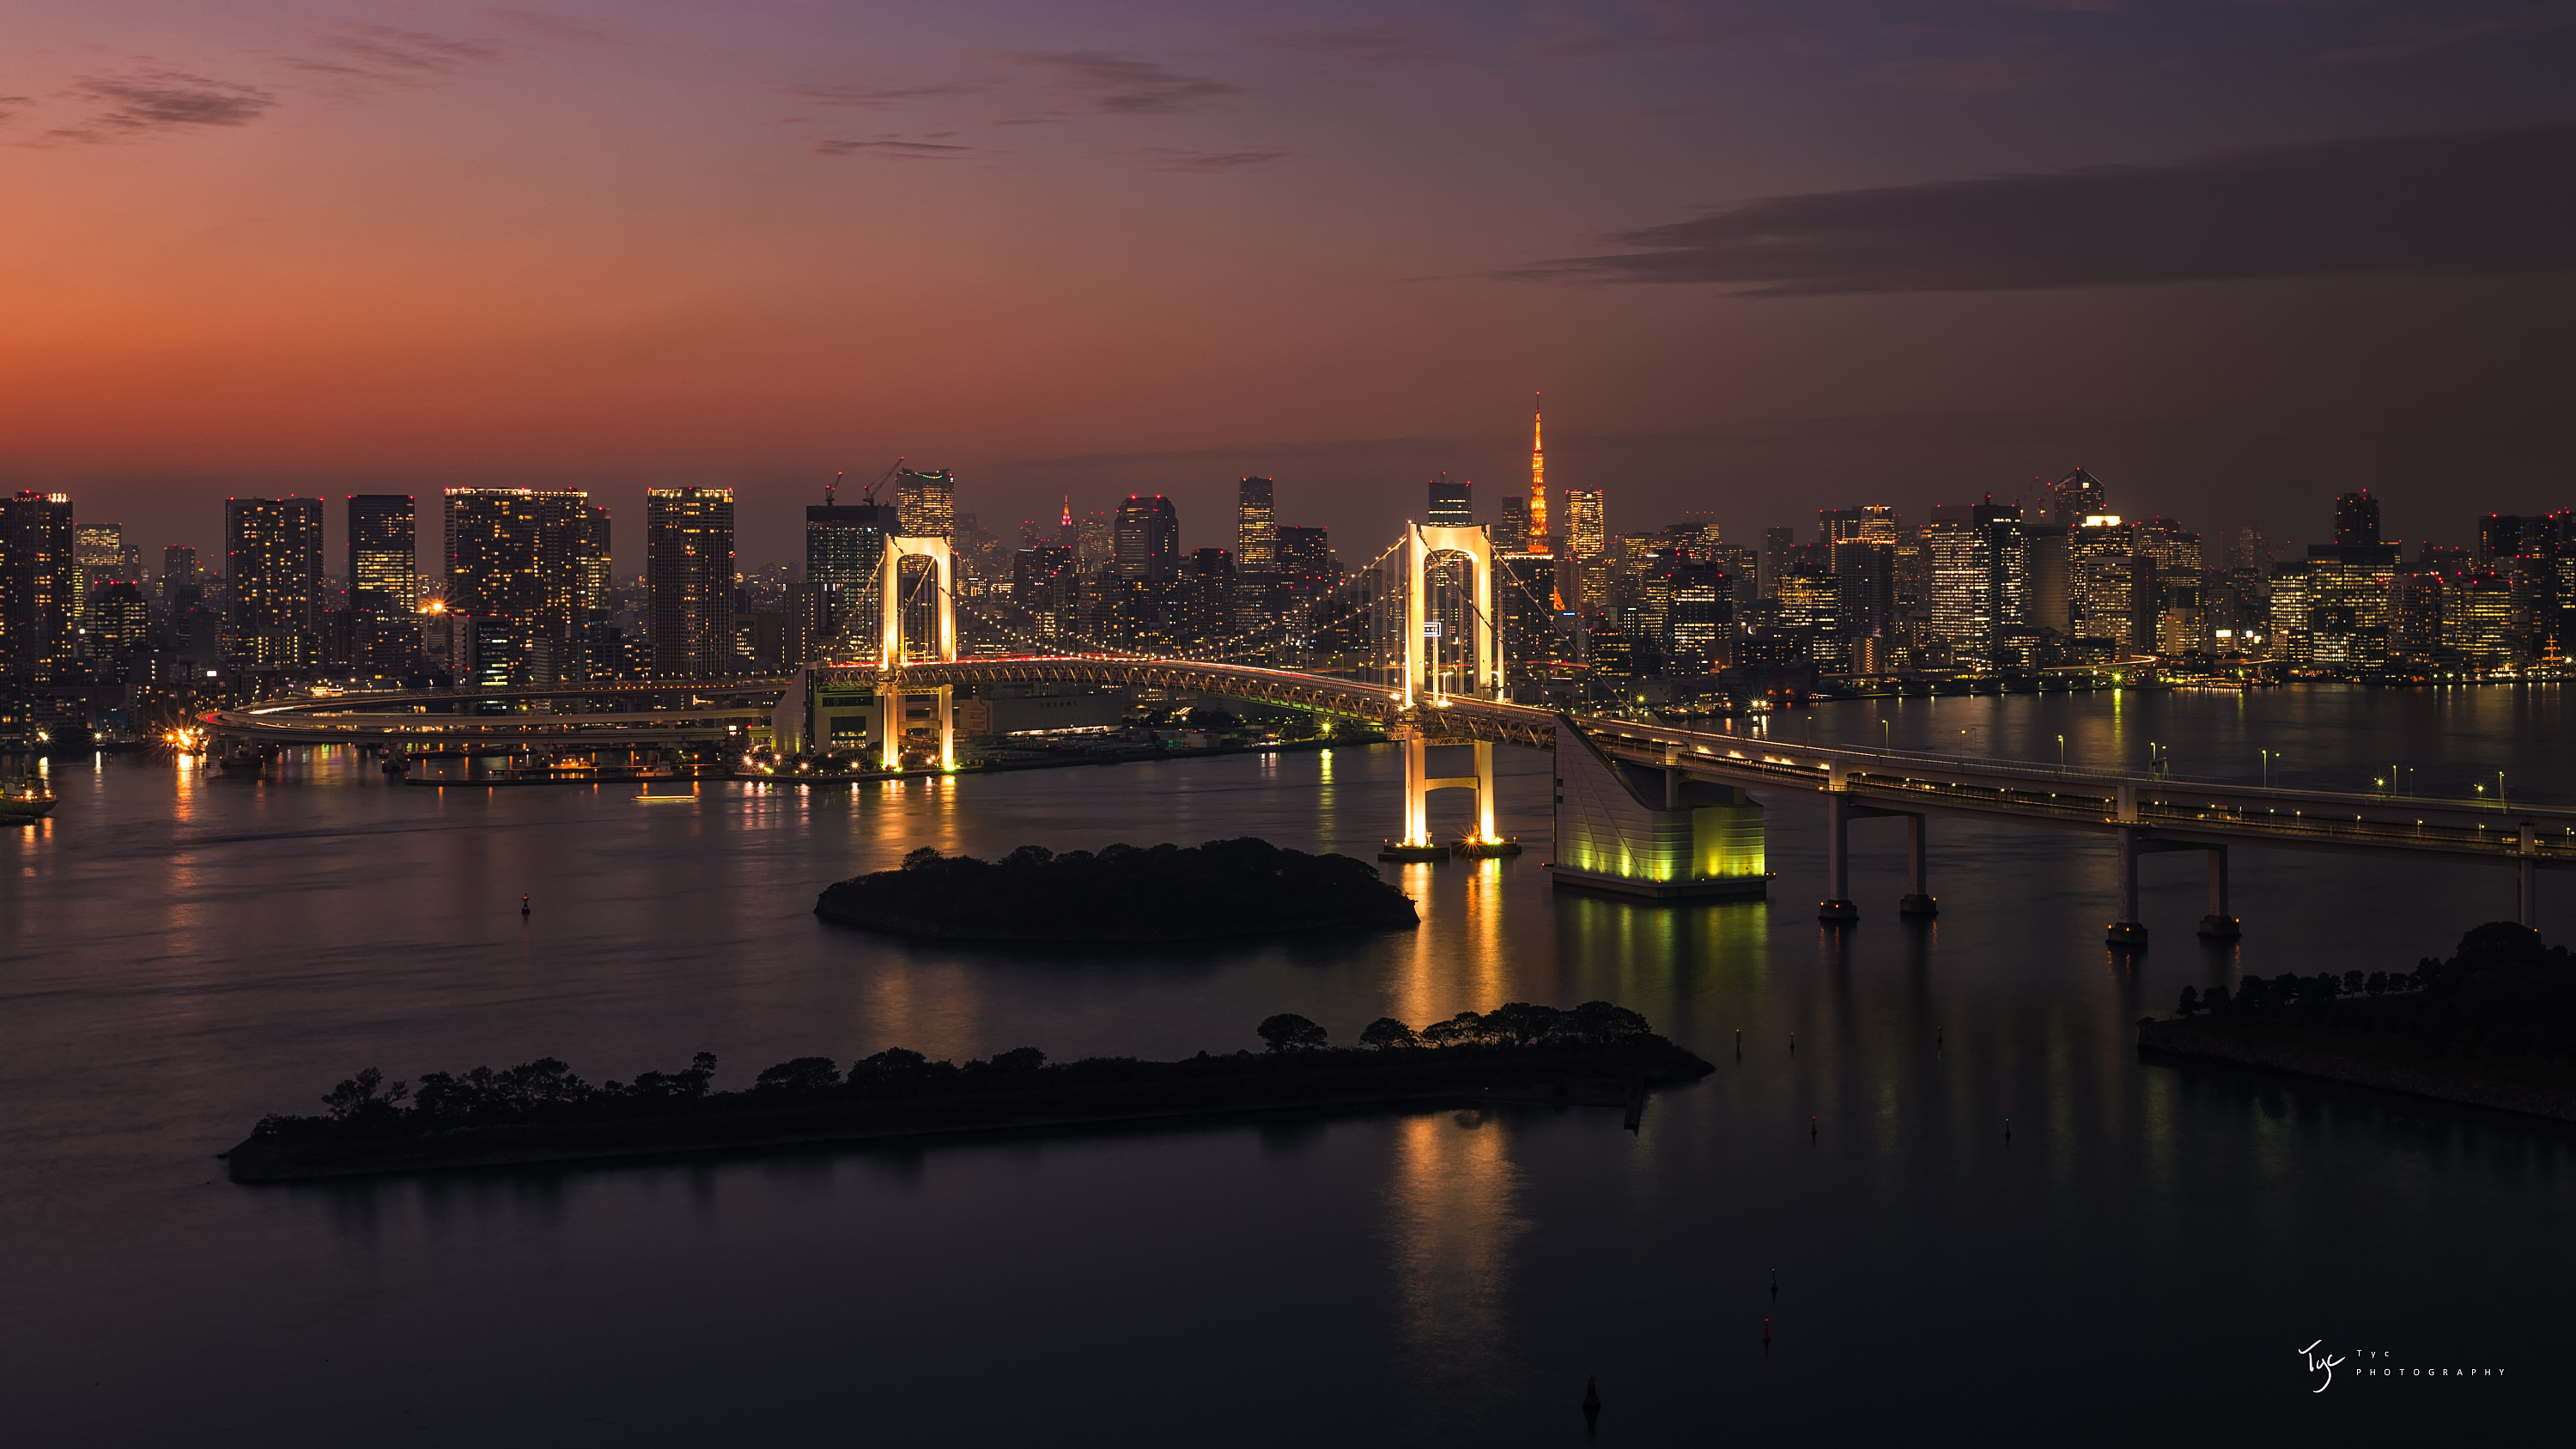 壁纸1024×768美丽东京湾彩虹大桥 夜色下的彩虹桥 Japan Travel Japan Tokyo Rainbow Bridge壁纸,夜色下的东京彩虹桥壁纸图片-人文壁纸-人文图片素材-桌面壁纸